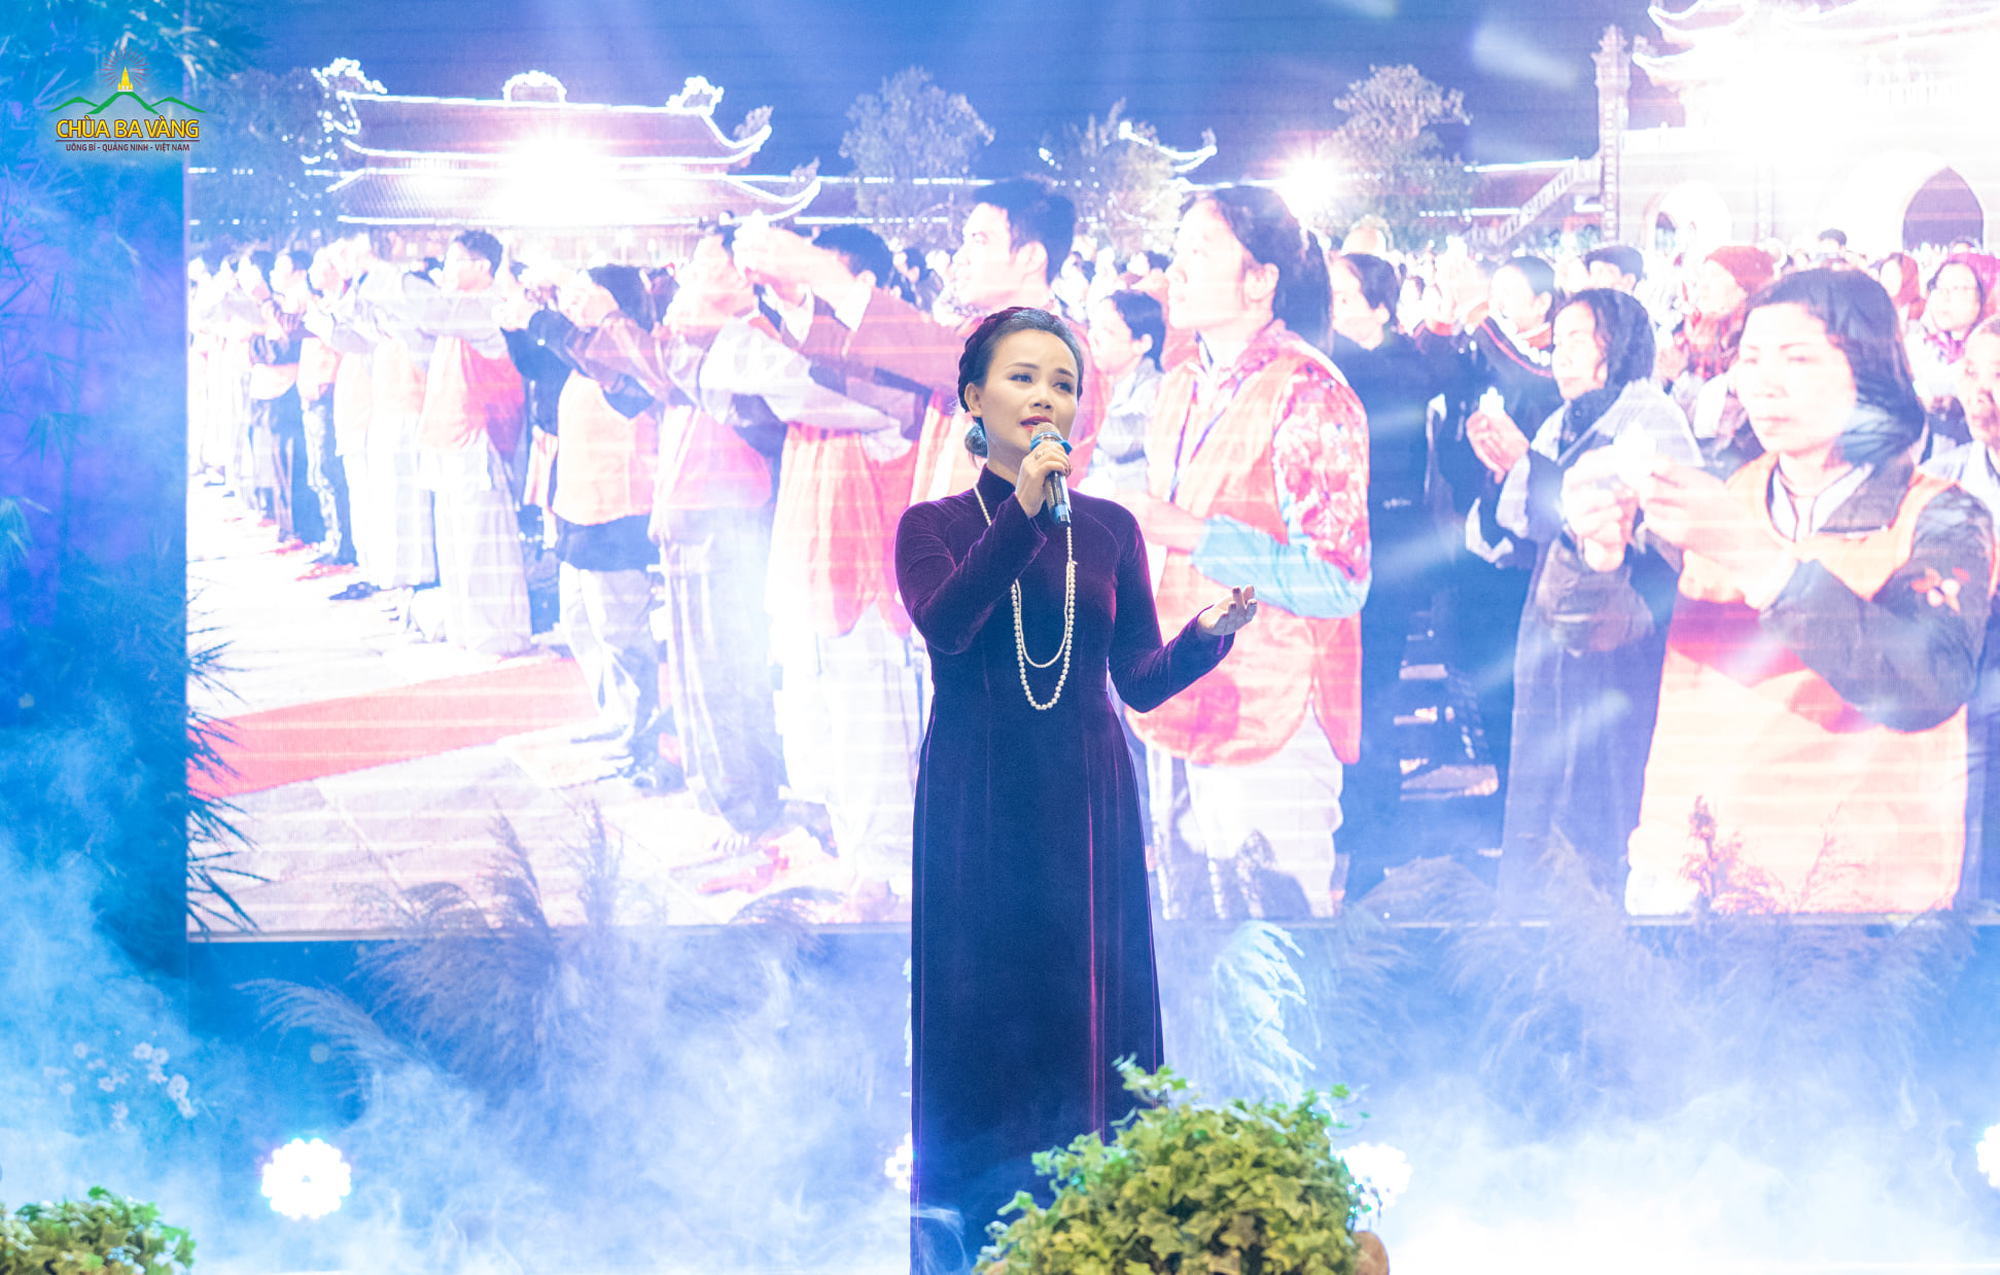 Diễn viên - ca sĩ Đào Hoàng Yến hát cúng dường bài hát “Vui trong ánh đạo”